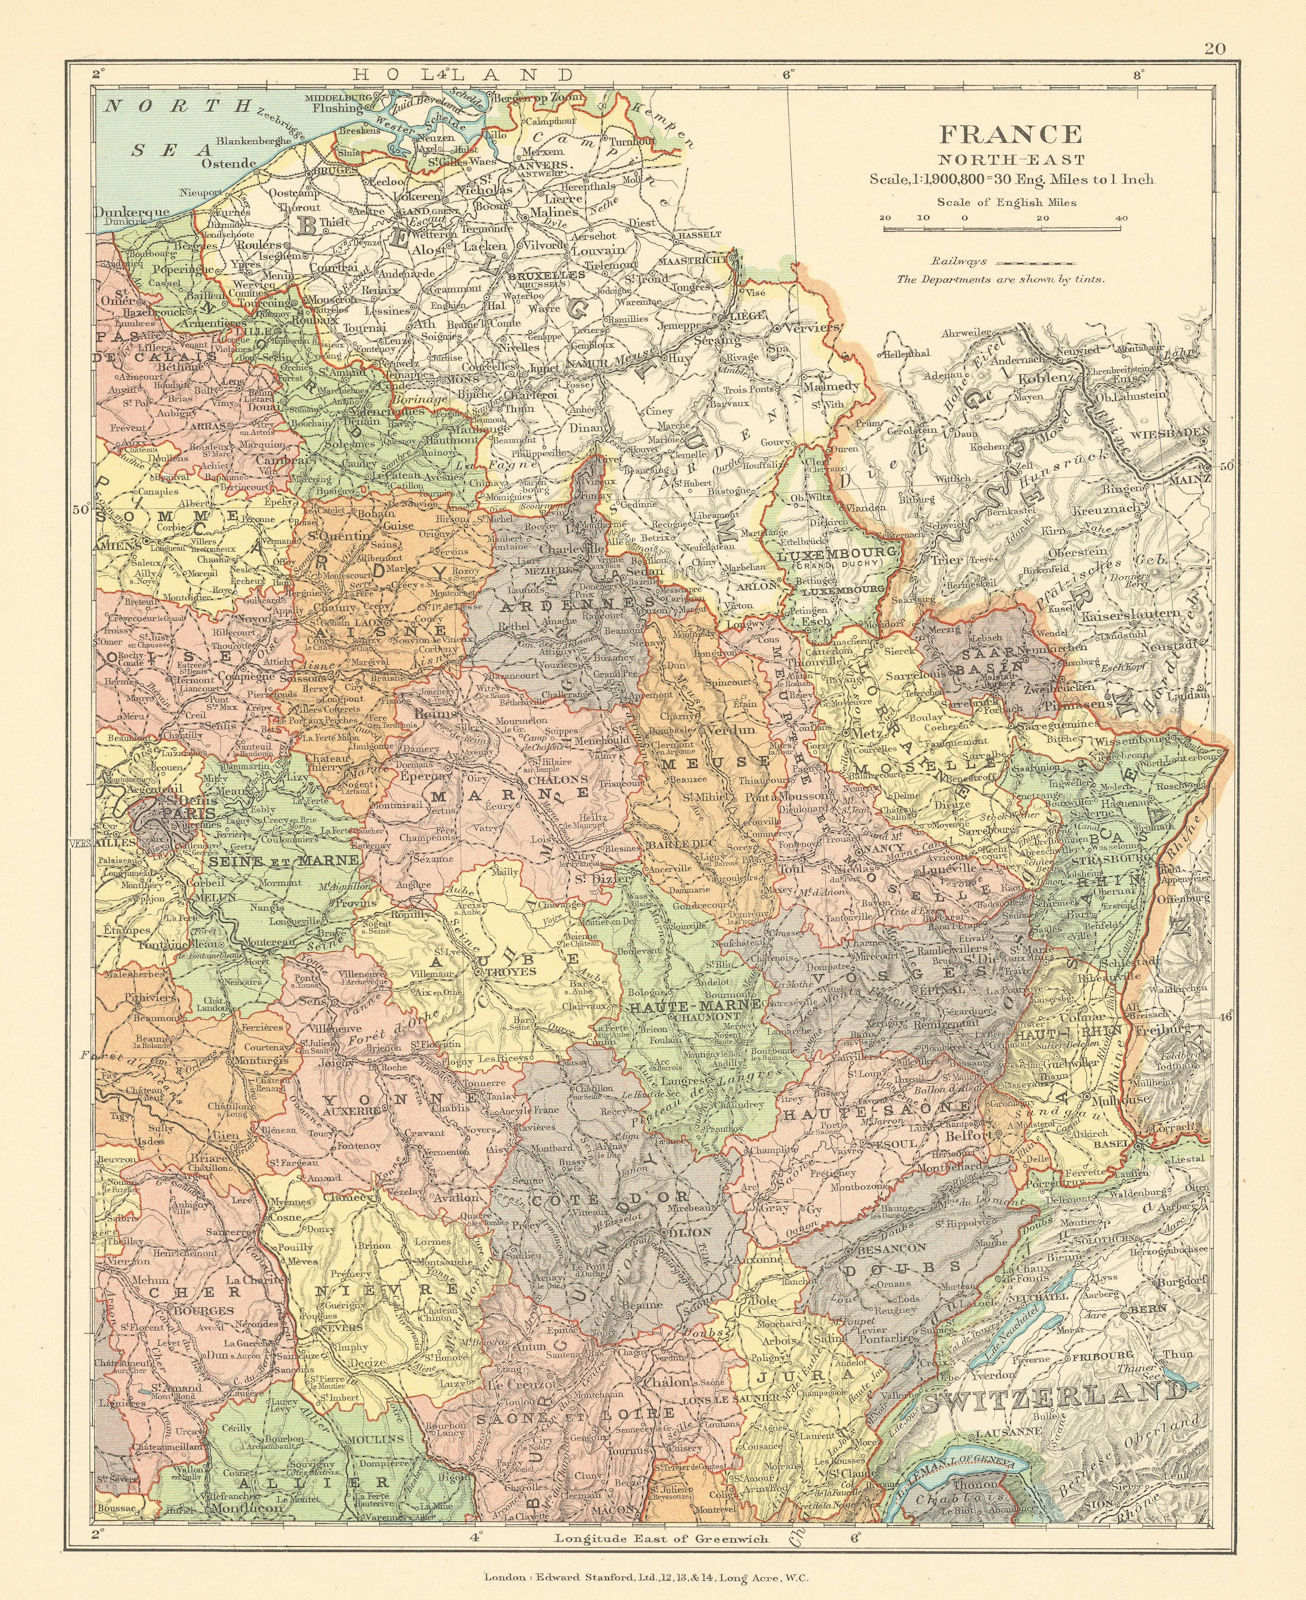 France North-East. Grand Est Bourgogne Franch-Comté. STANFORD c1925 old map